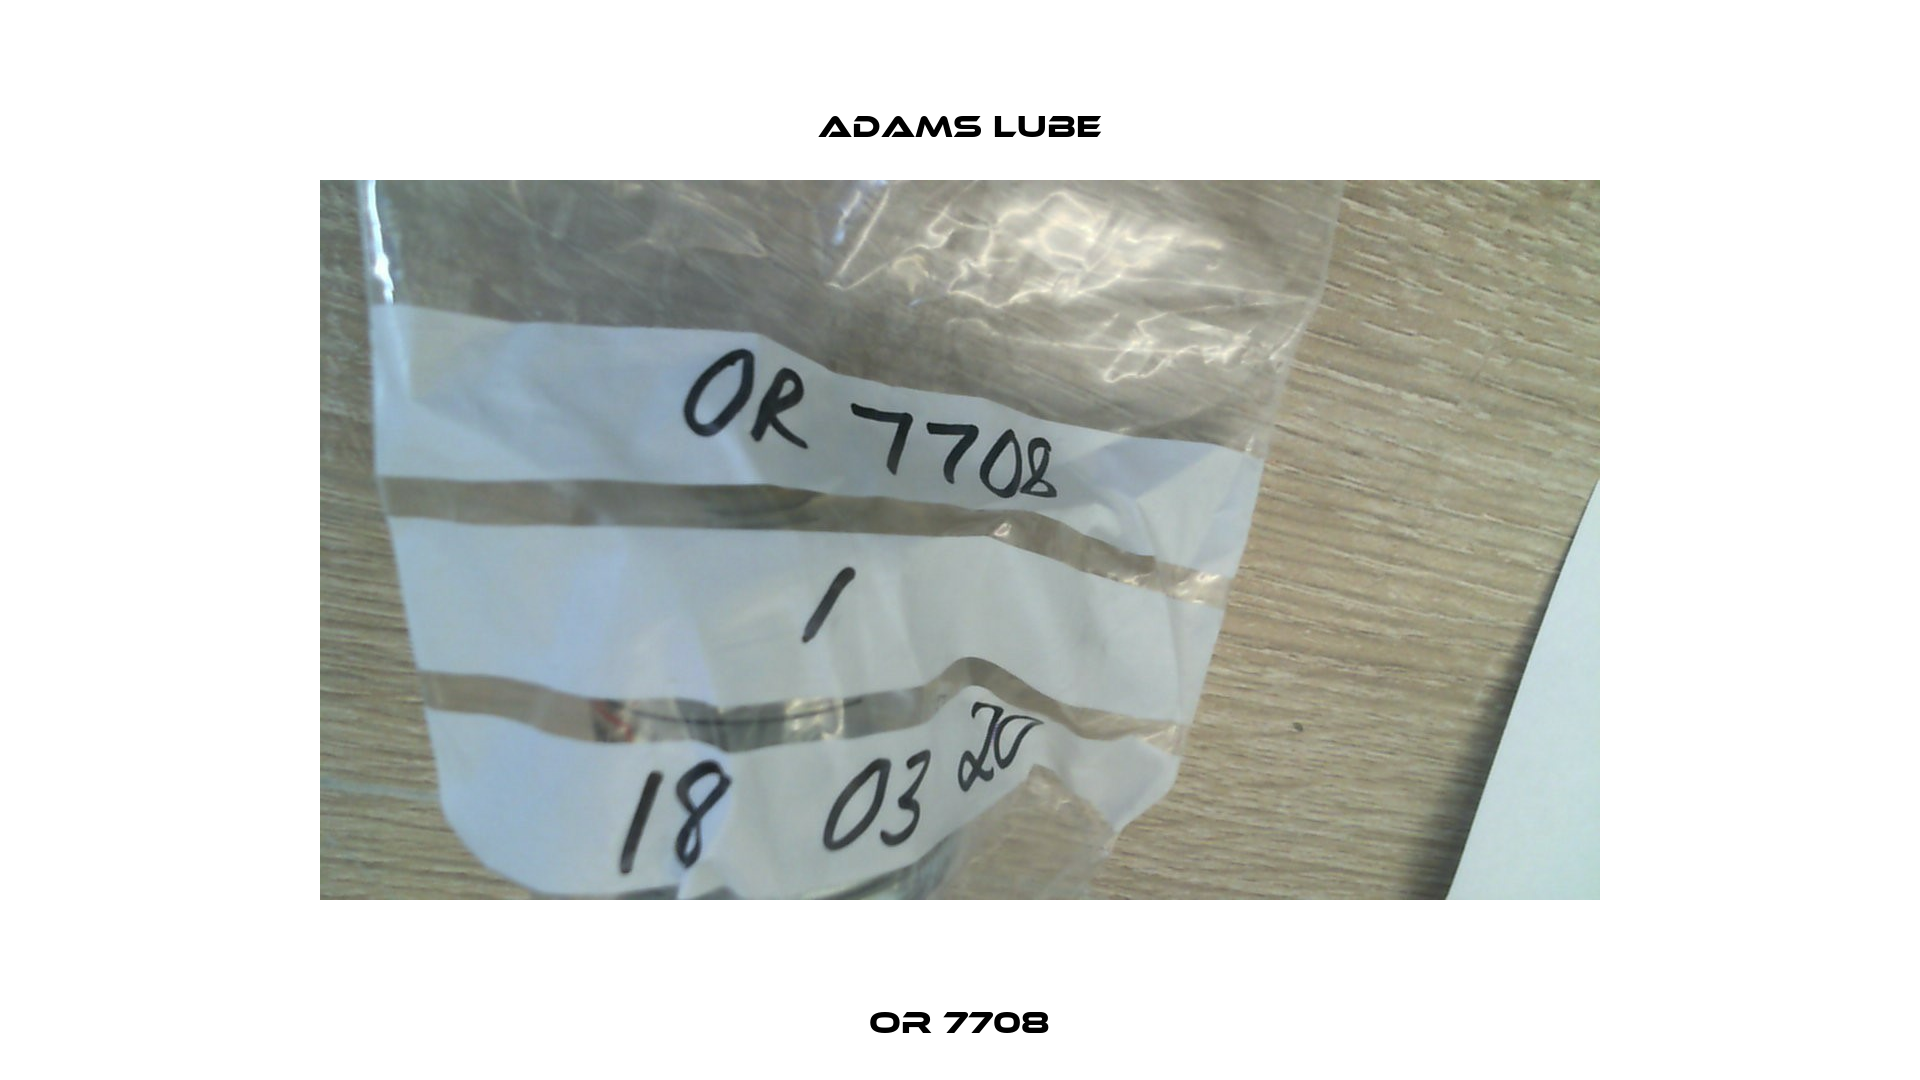 OR 7708 Adams Lube